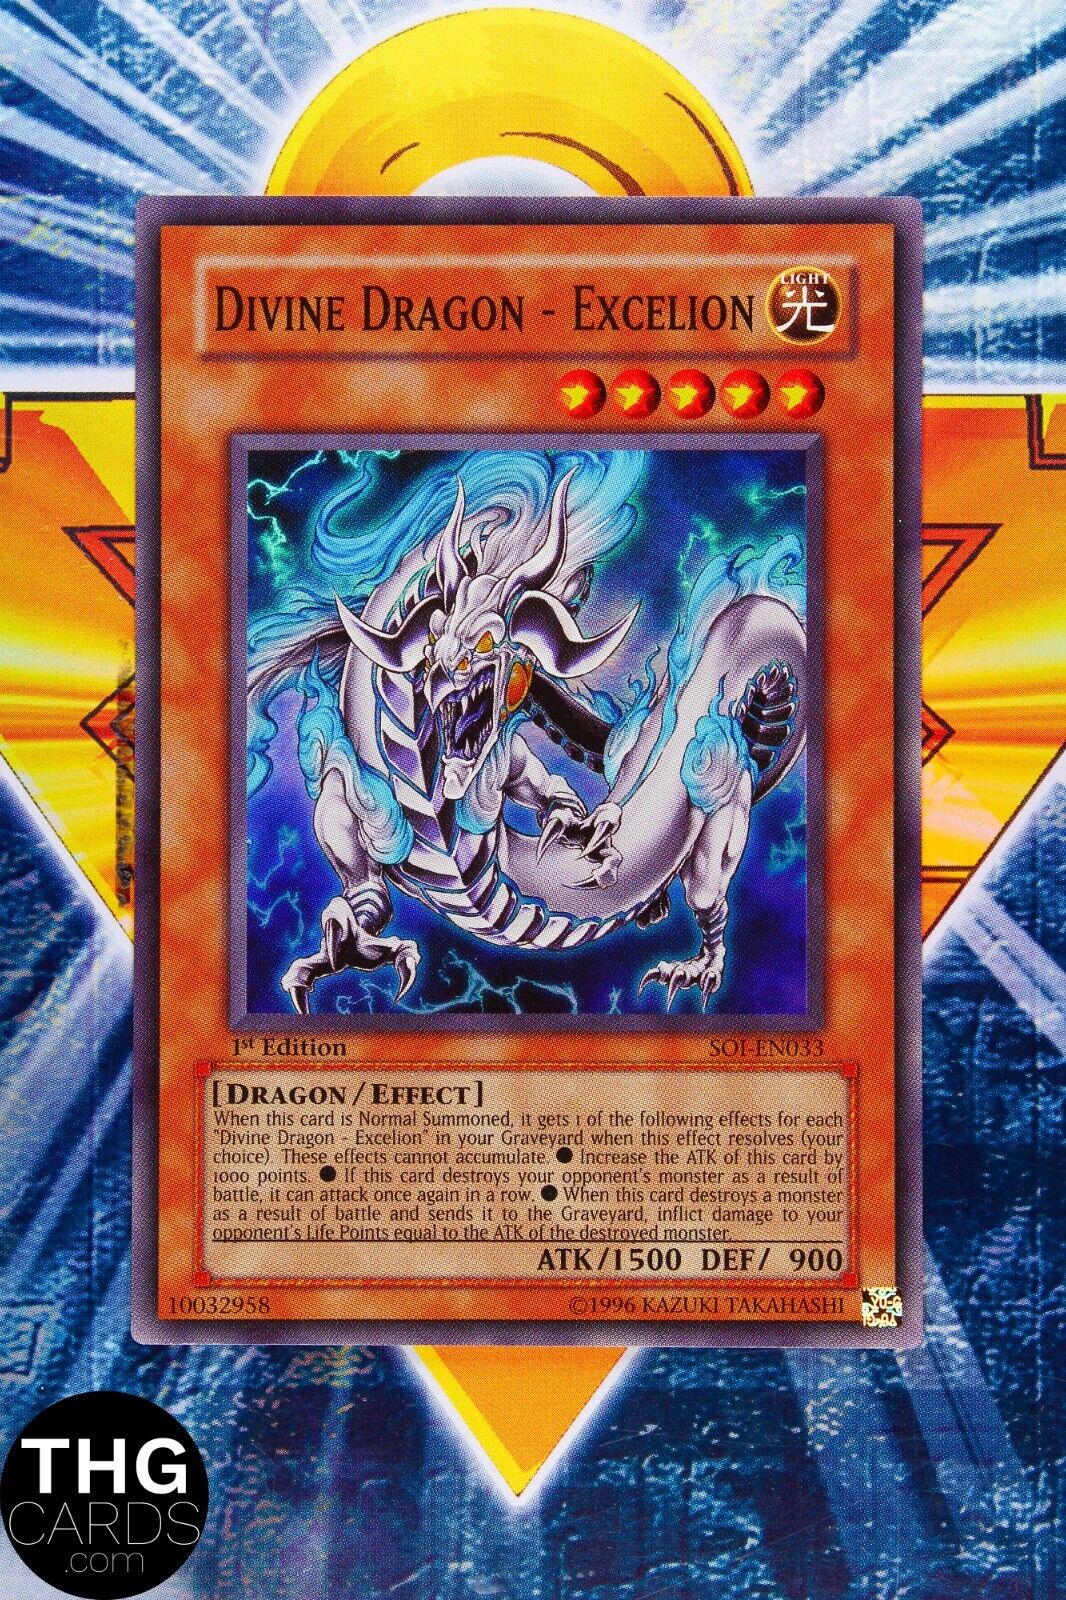 Divine Dragon - Excelion SOI-EN033 1st Edition Super Rare Yugioh Card